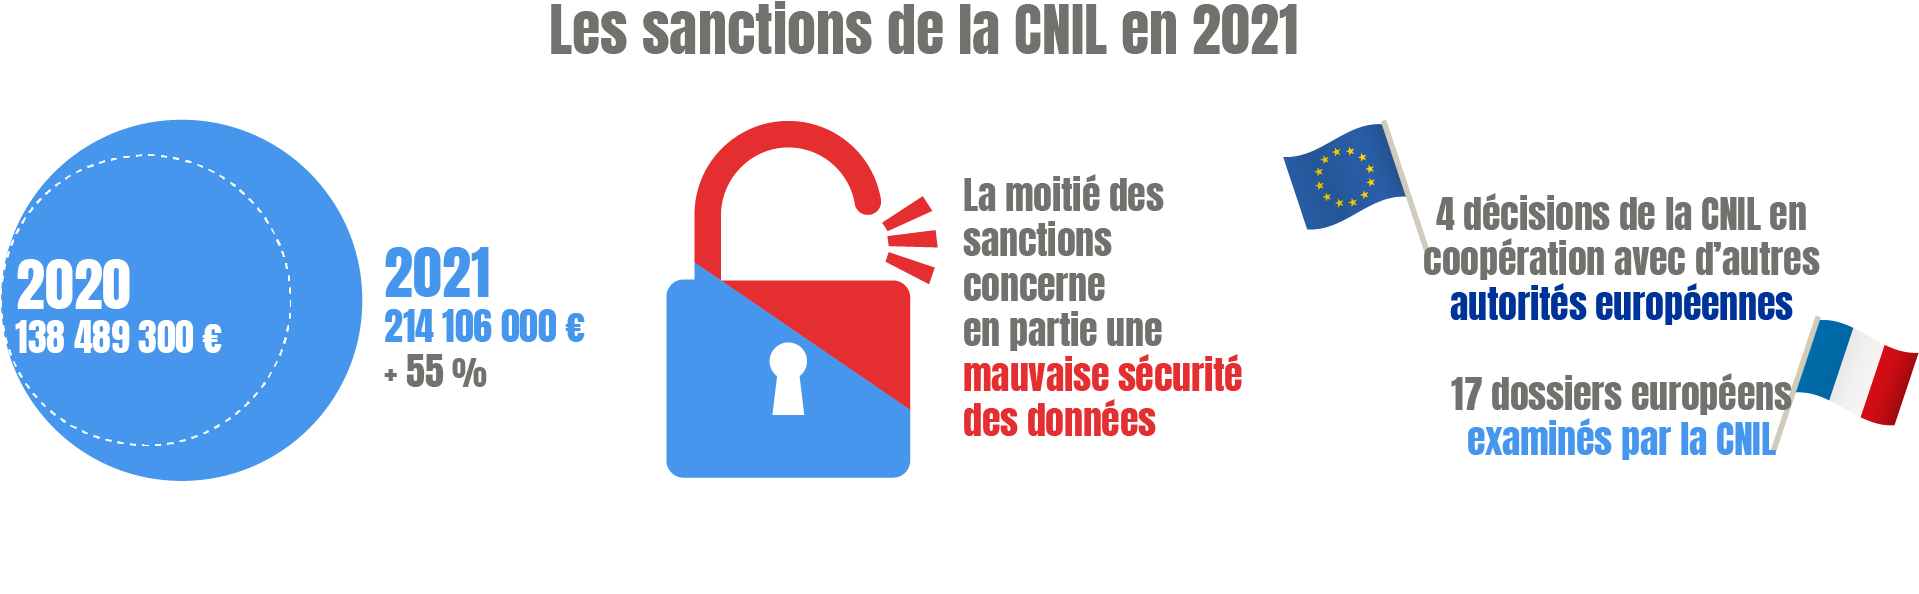 Sanctions CNIL 2021 - 2020 : 138 489 300 €; 2021 : 214 106 000 € (+ 55%) ; La moitié des sanctions concerne en partie une mauvaise sécurité des données ; 4 décisions de la CNIL en coopération avec les autorités de protection des données européennes ; 17 dossiers examinés par la CNIL